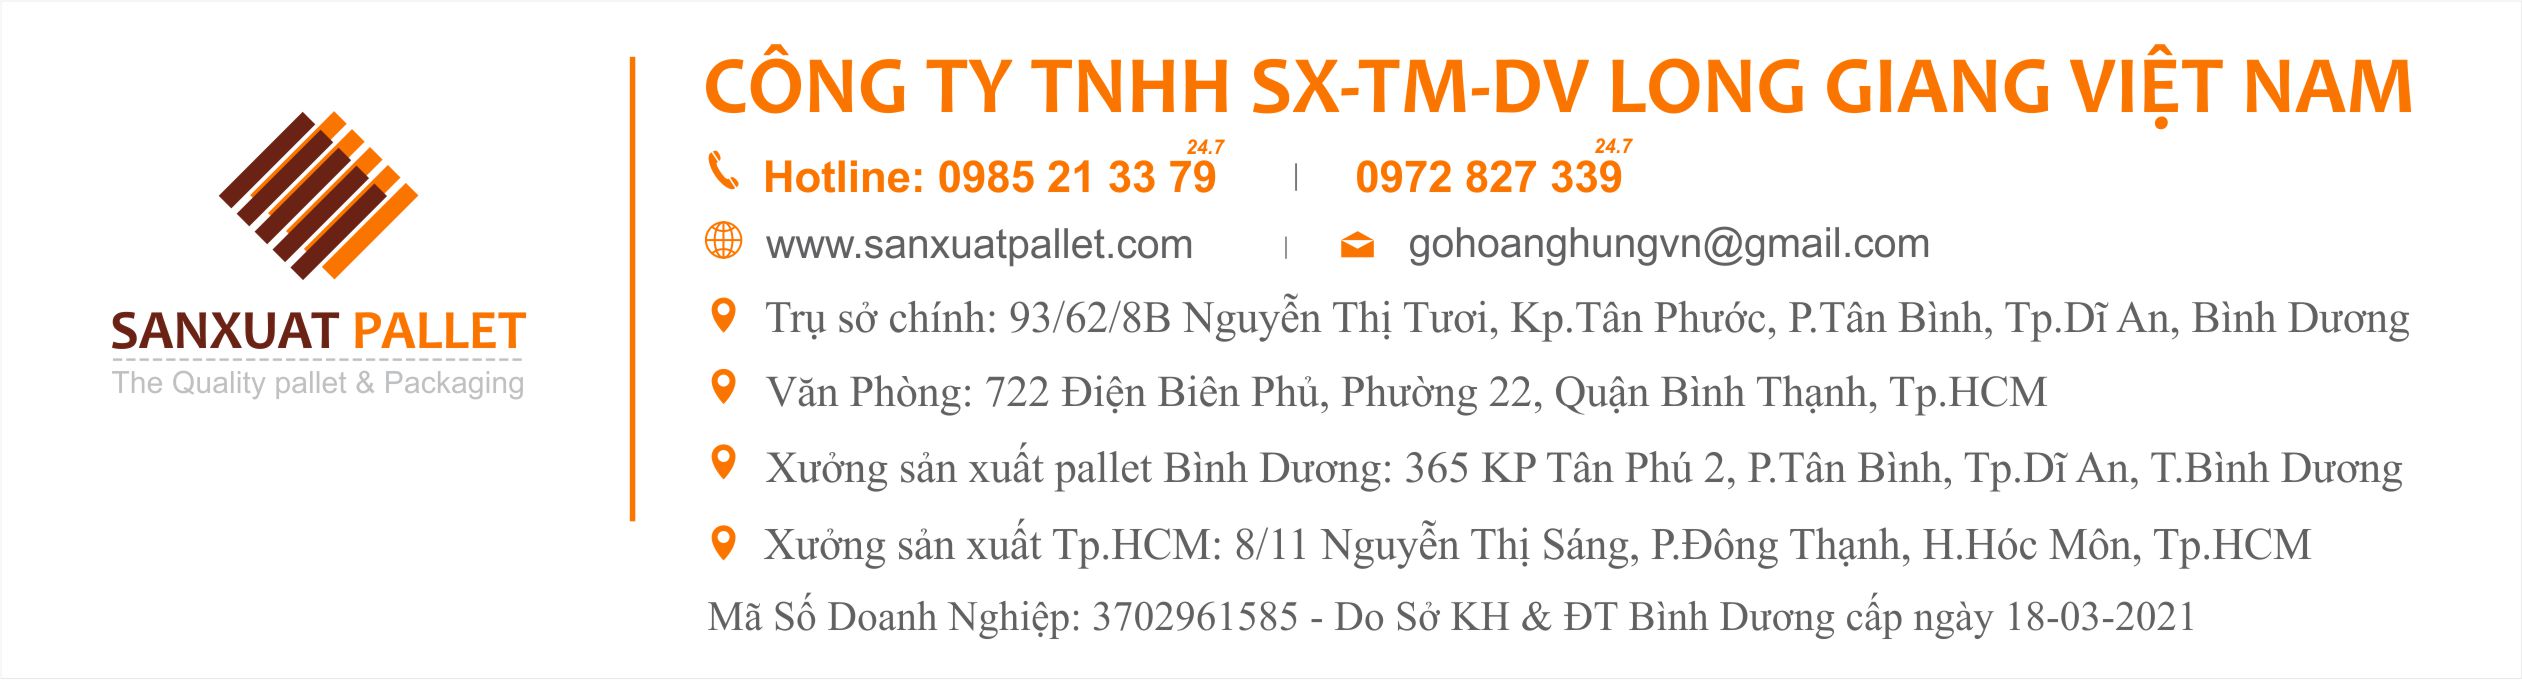 Long Giang Việt Nam – Gỗ pallet giá rẻ ở TPHCM